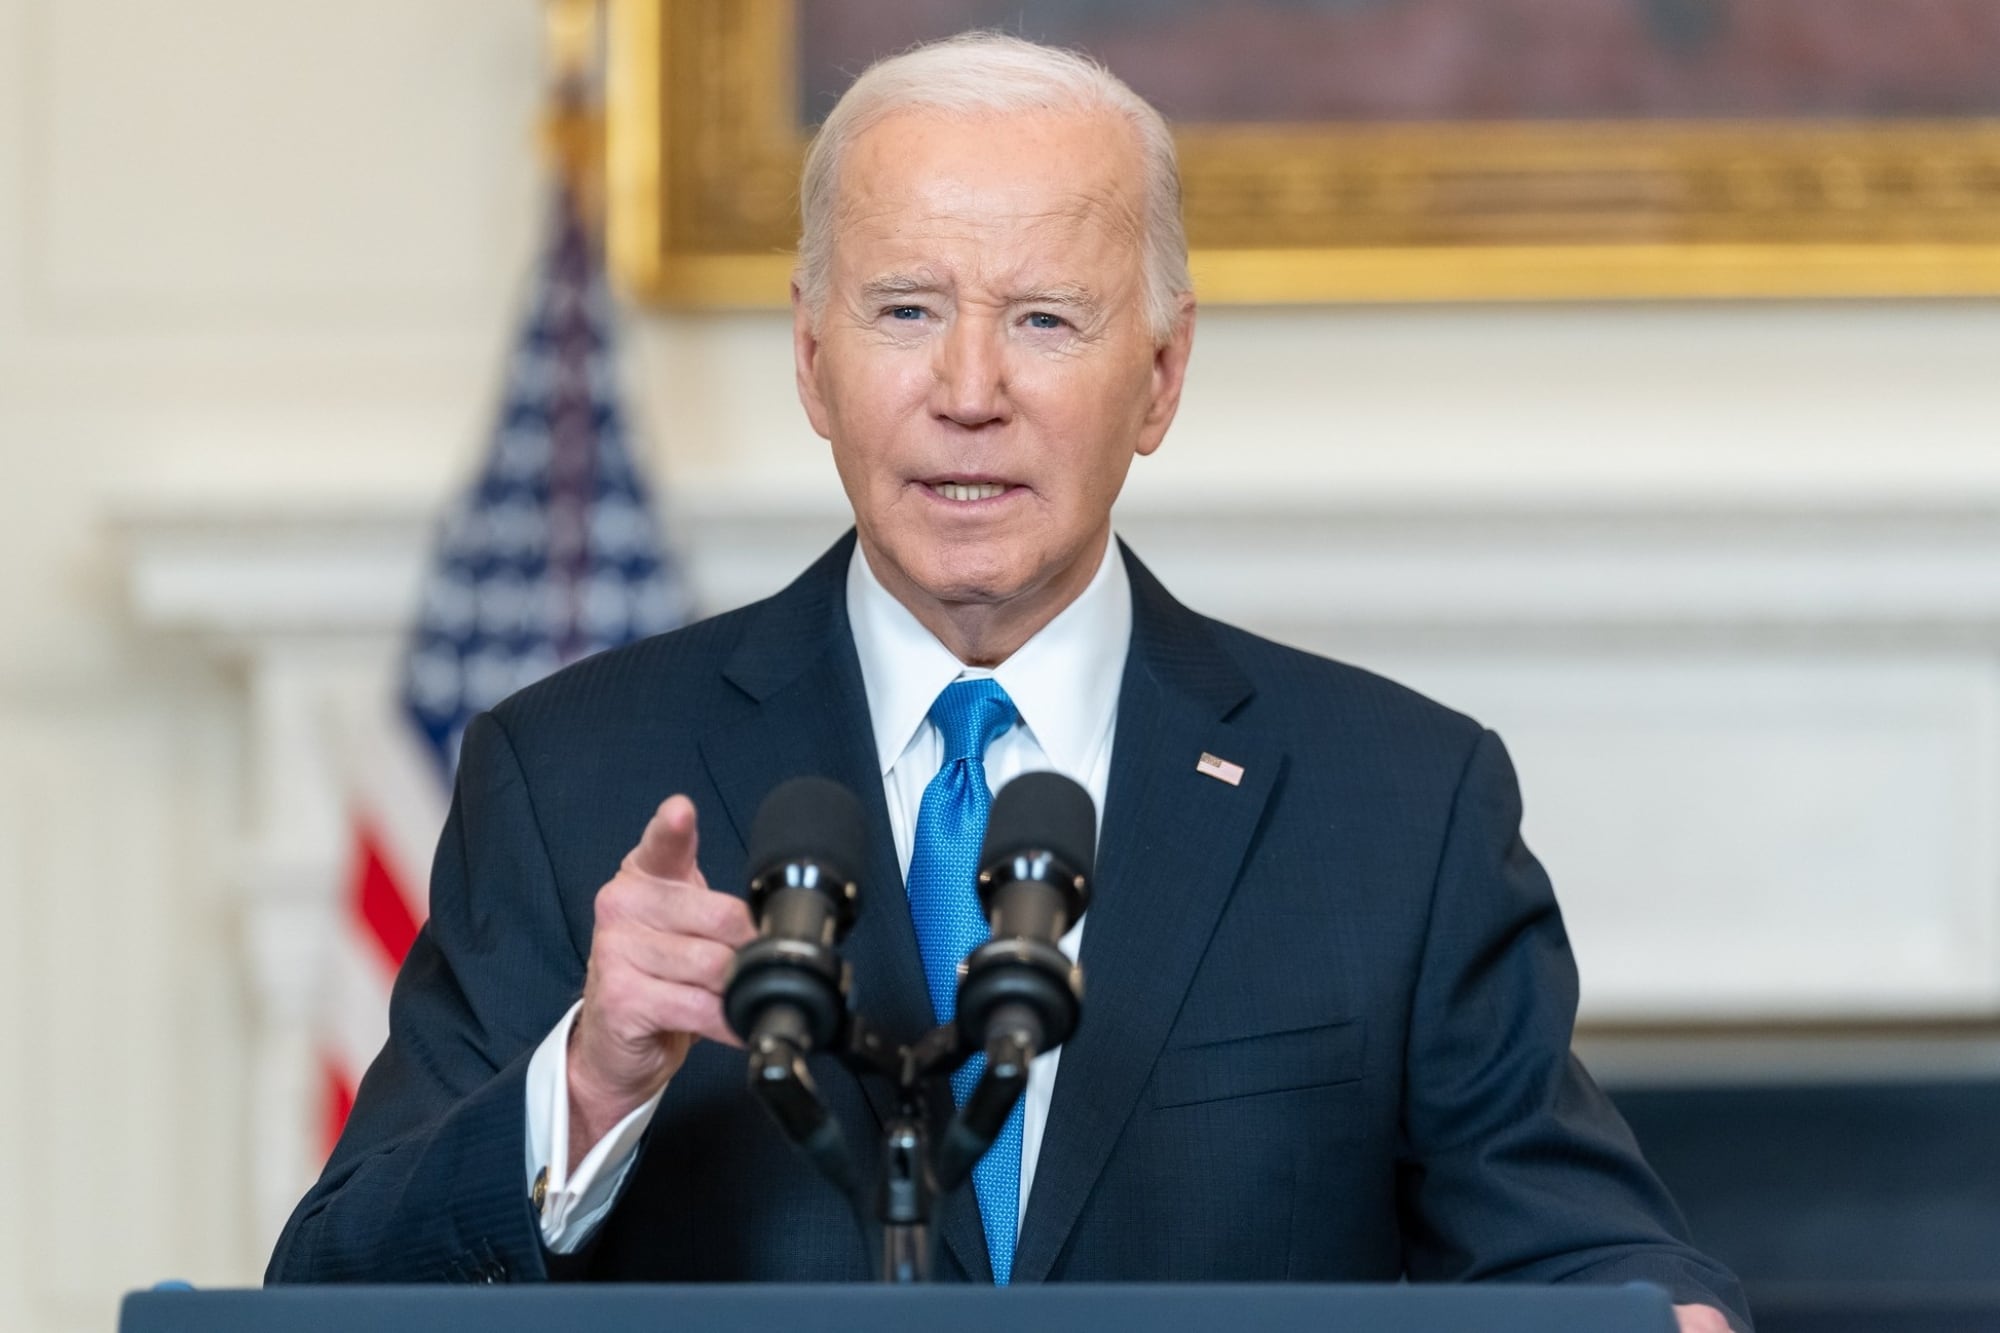 Joe Biden en Florida: criticó a Donald Trump y se pronunció sobre un polémico tema que divide a los estadounidenses